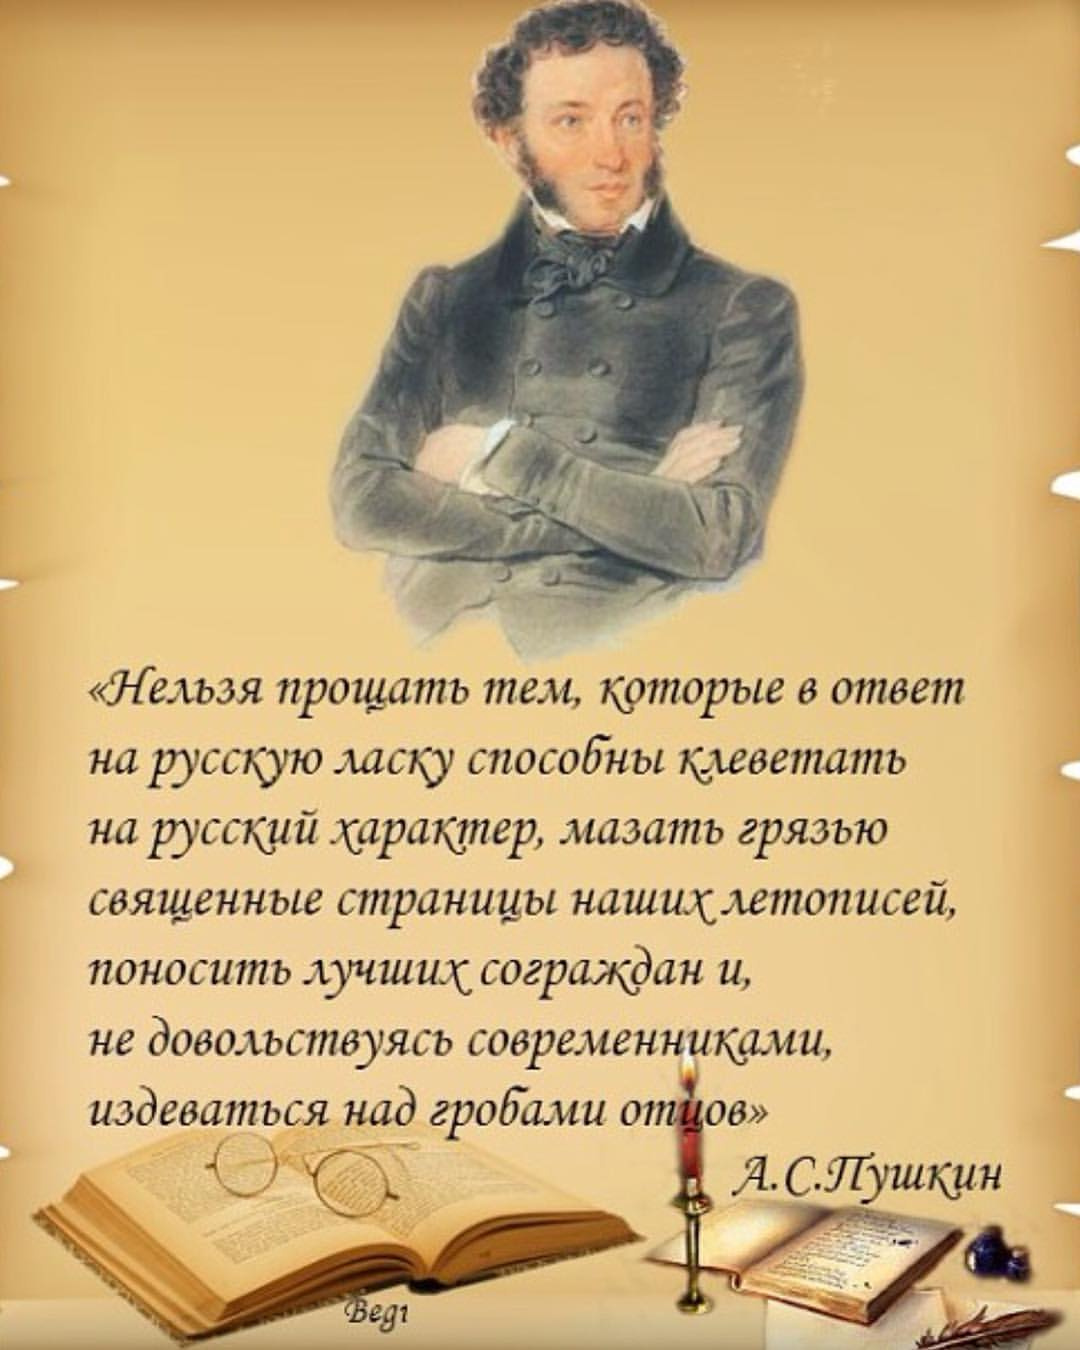 Пушкин о русском языке